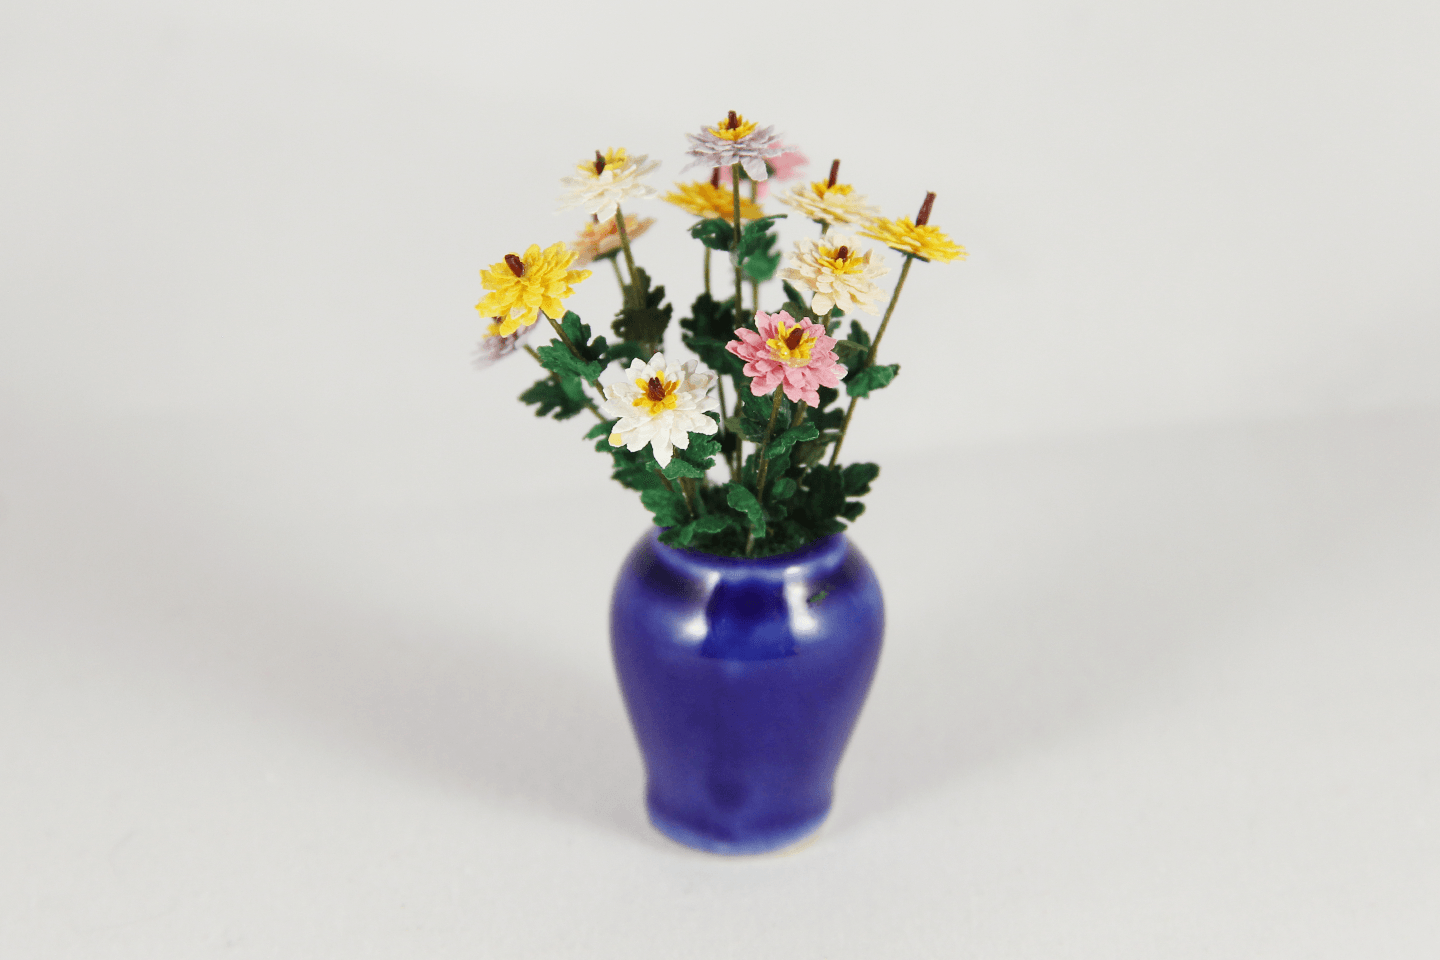 Flowers in Blue Pot - 1